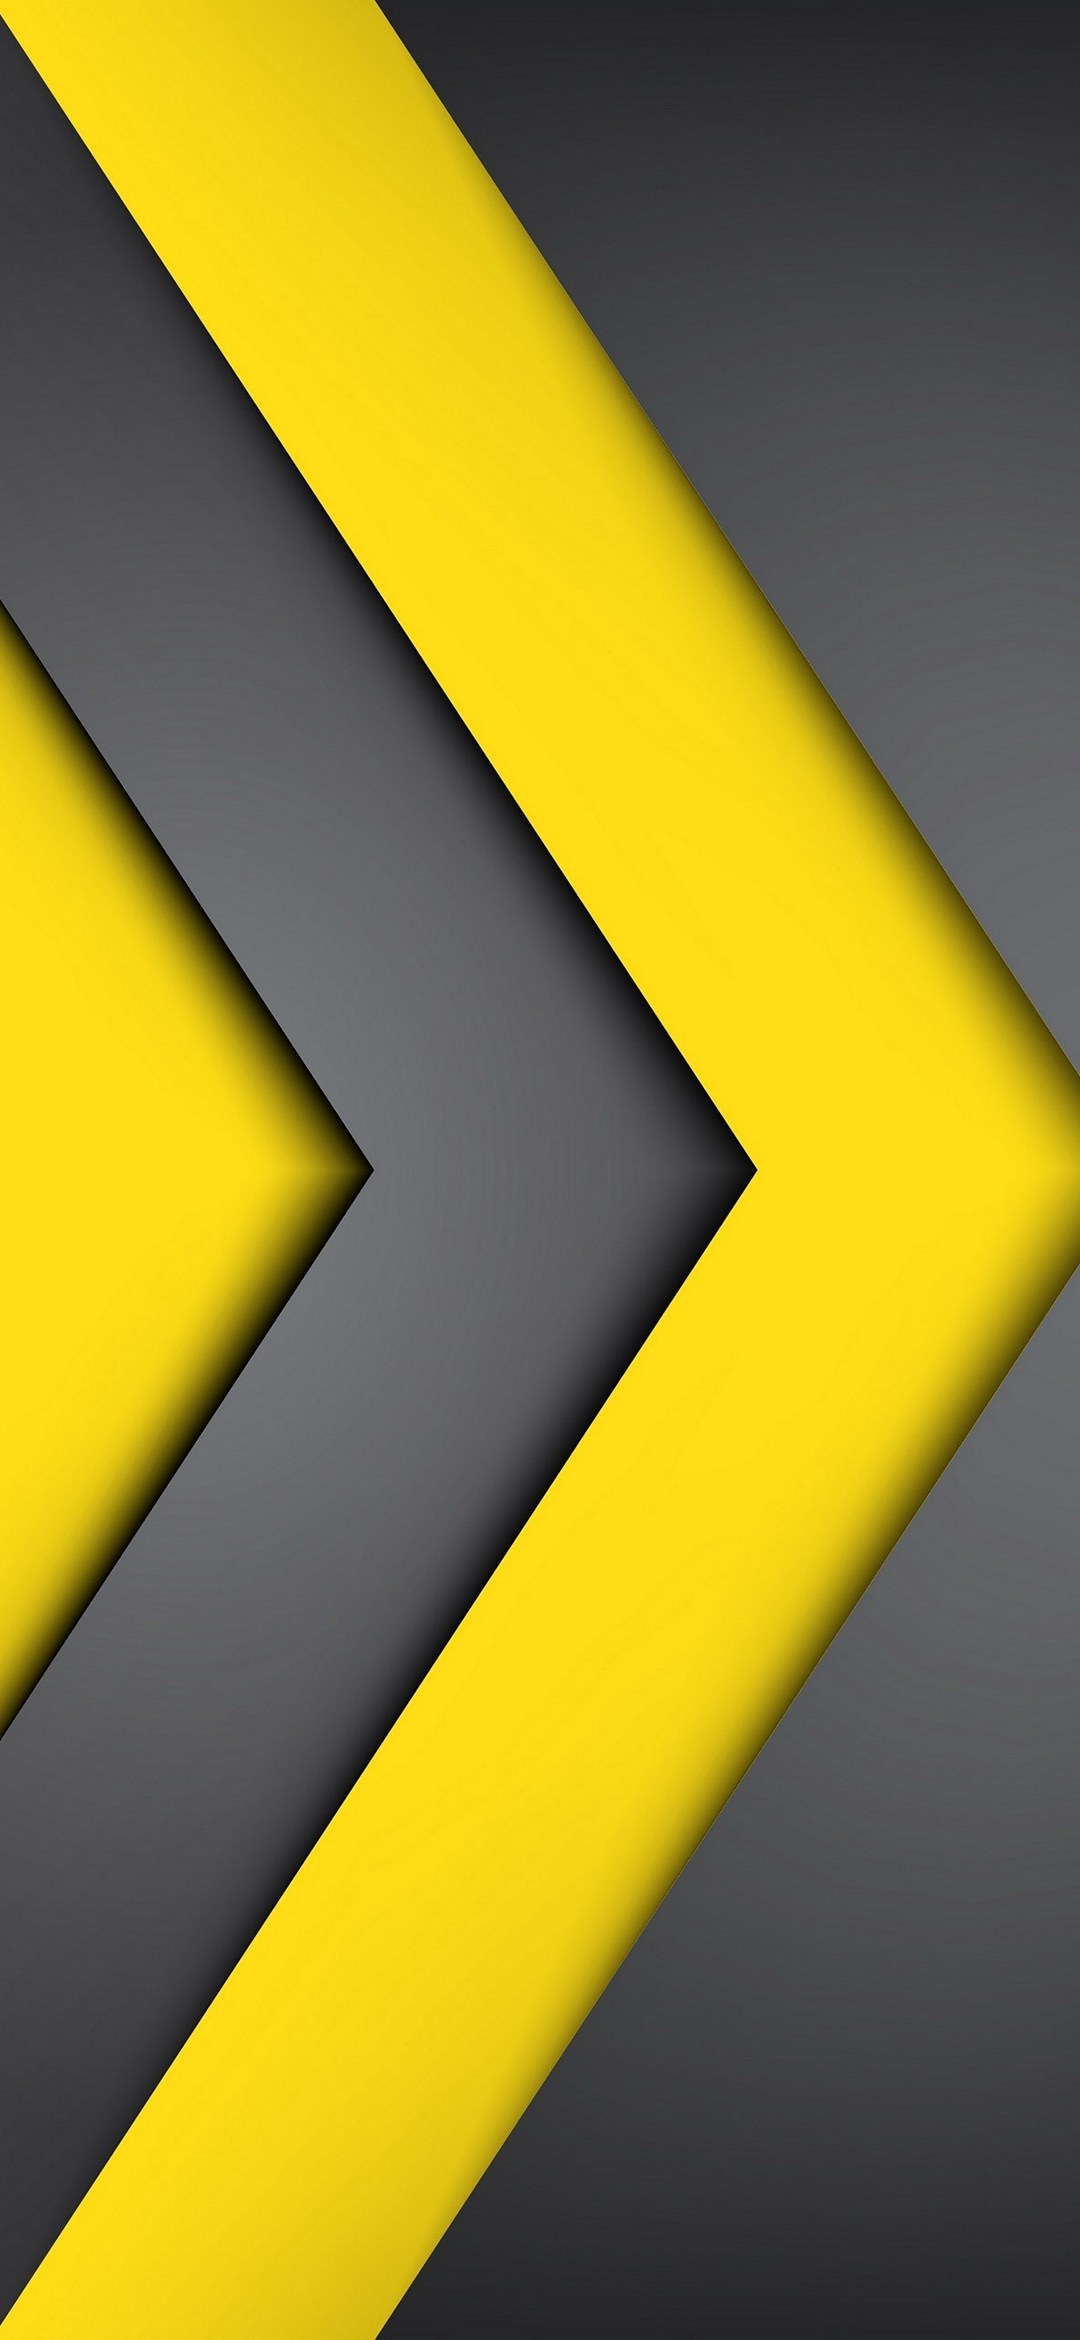 黒と黄色の交互の矢印 Google Pixel 4a Android スマホ壁紙 待ち受け スマラン